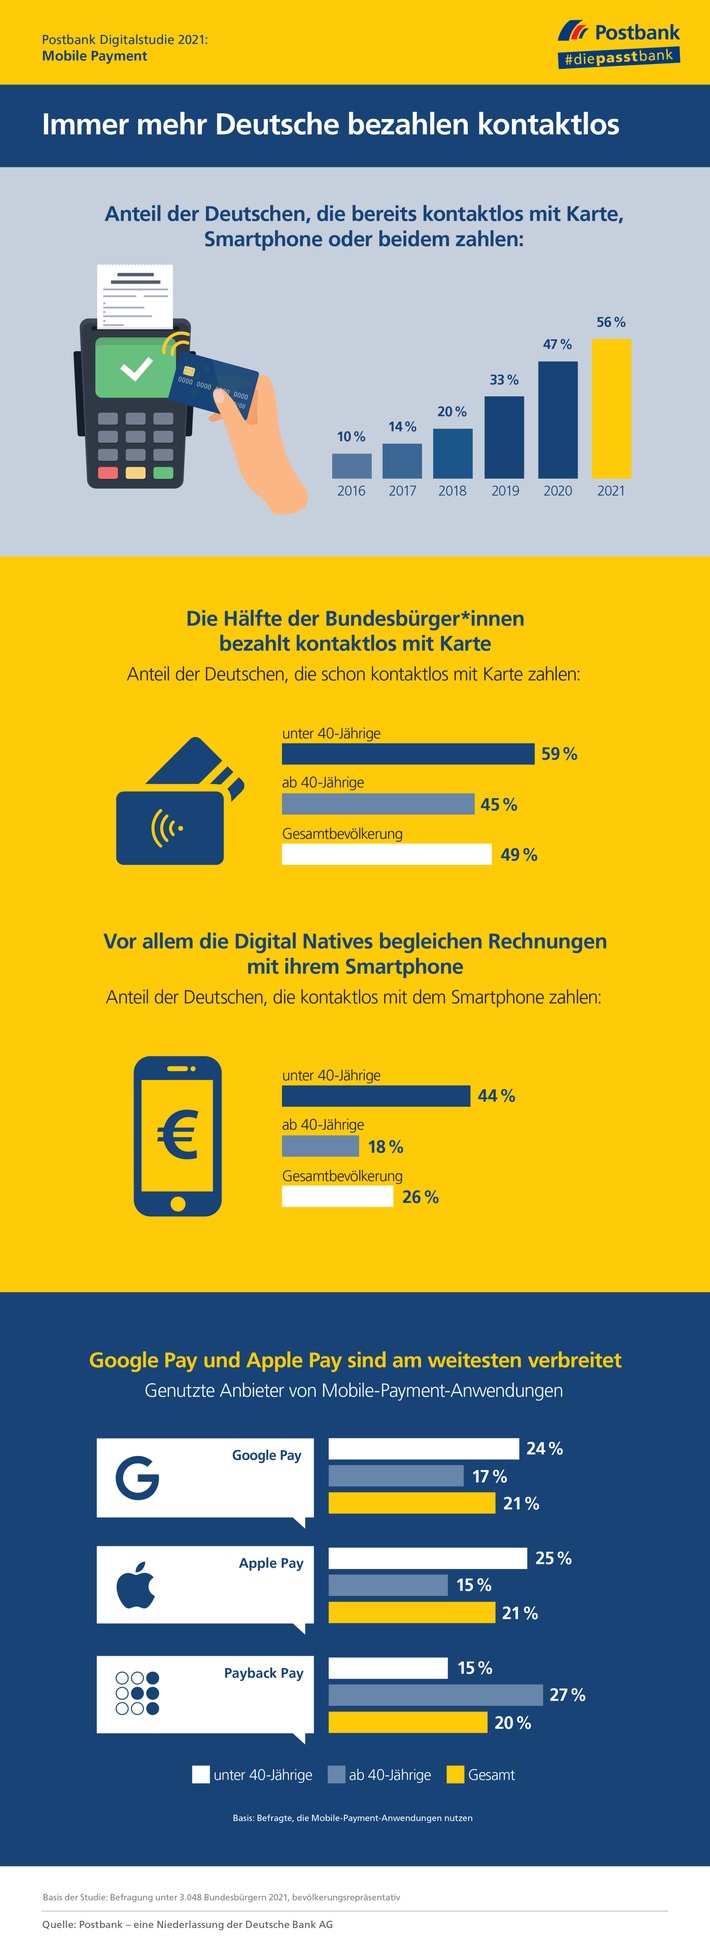 Postbank Digitalstudie 2021 / Studie: Mehr als jede*r zweite Deutsche nutzt kontaktlose Bezahlmethoden